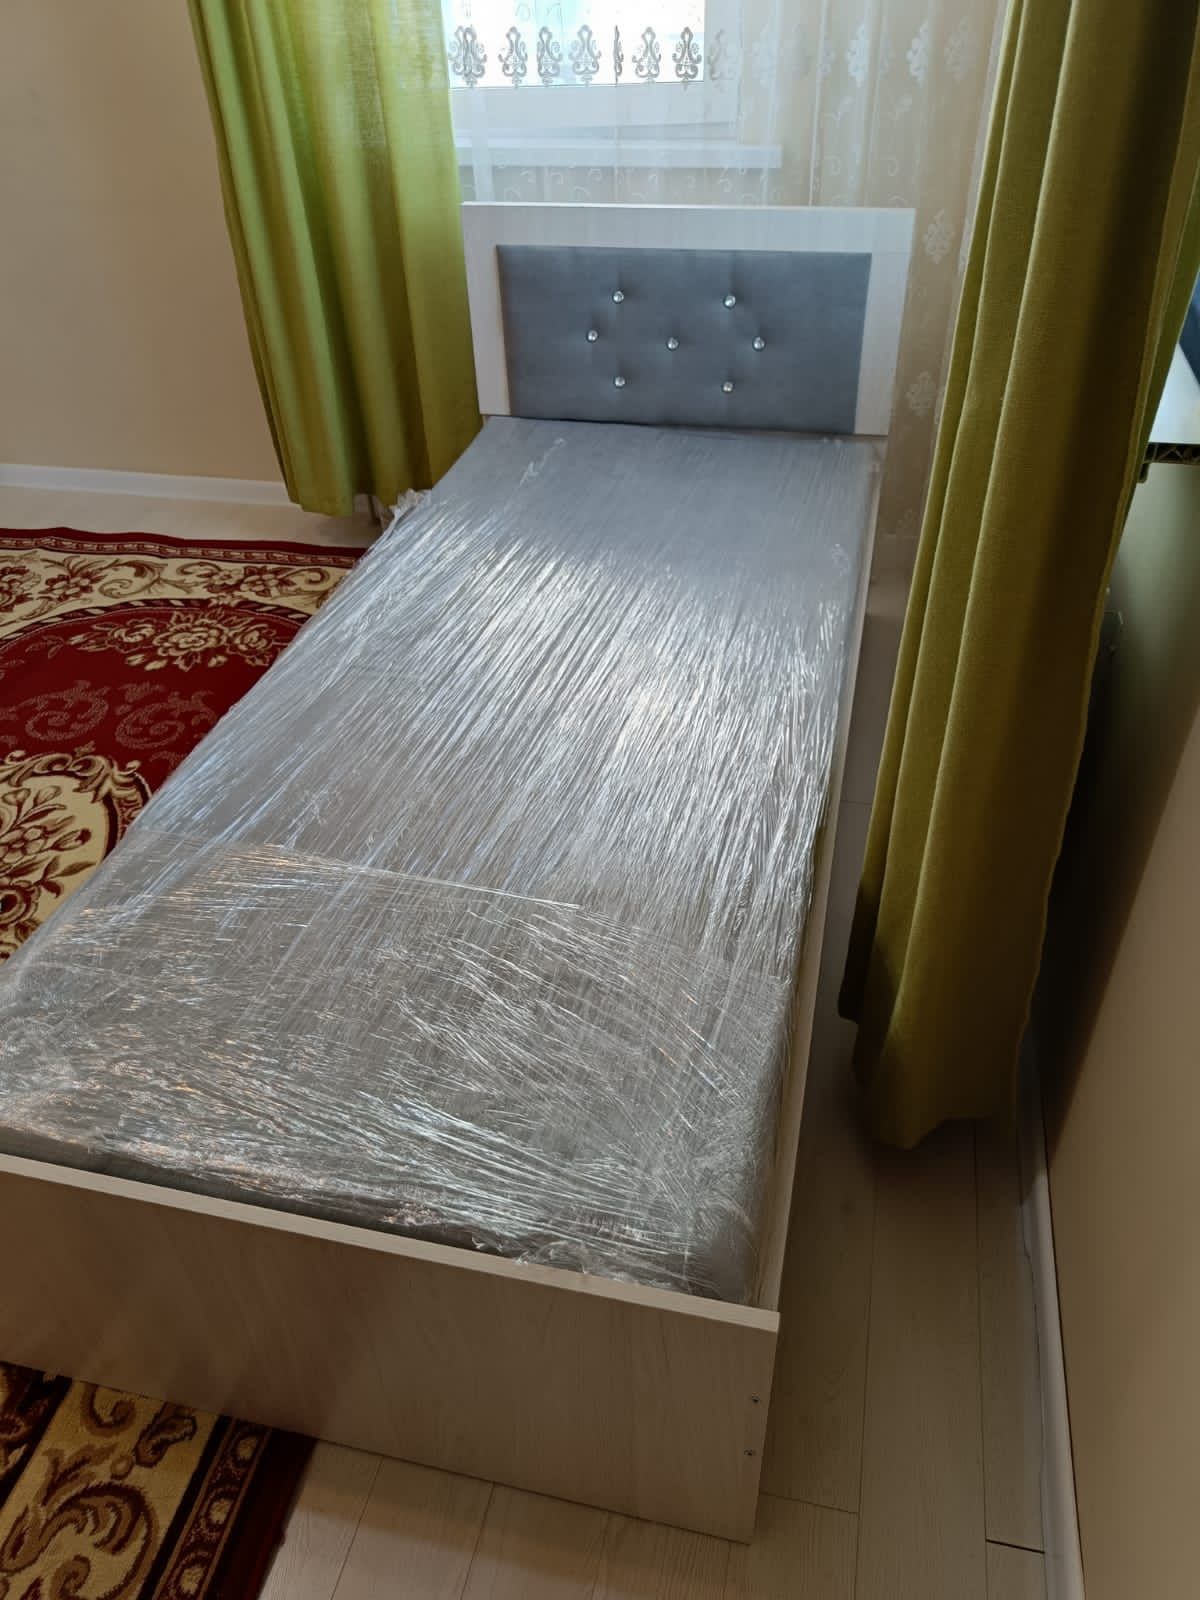 Кровать односпальная, 90x200 см, с матрасом.  35 000 тг